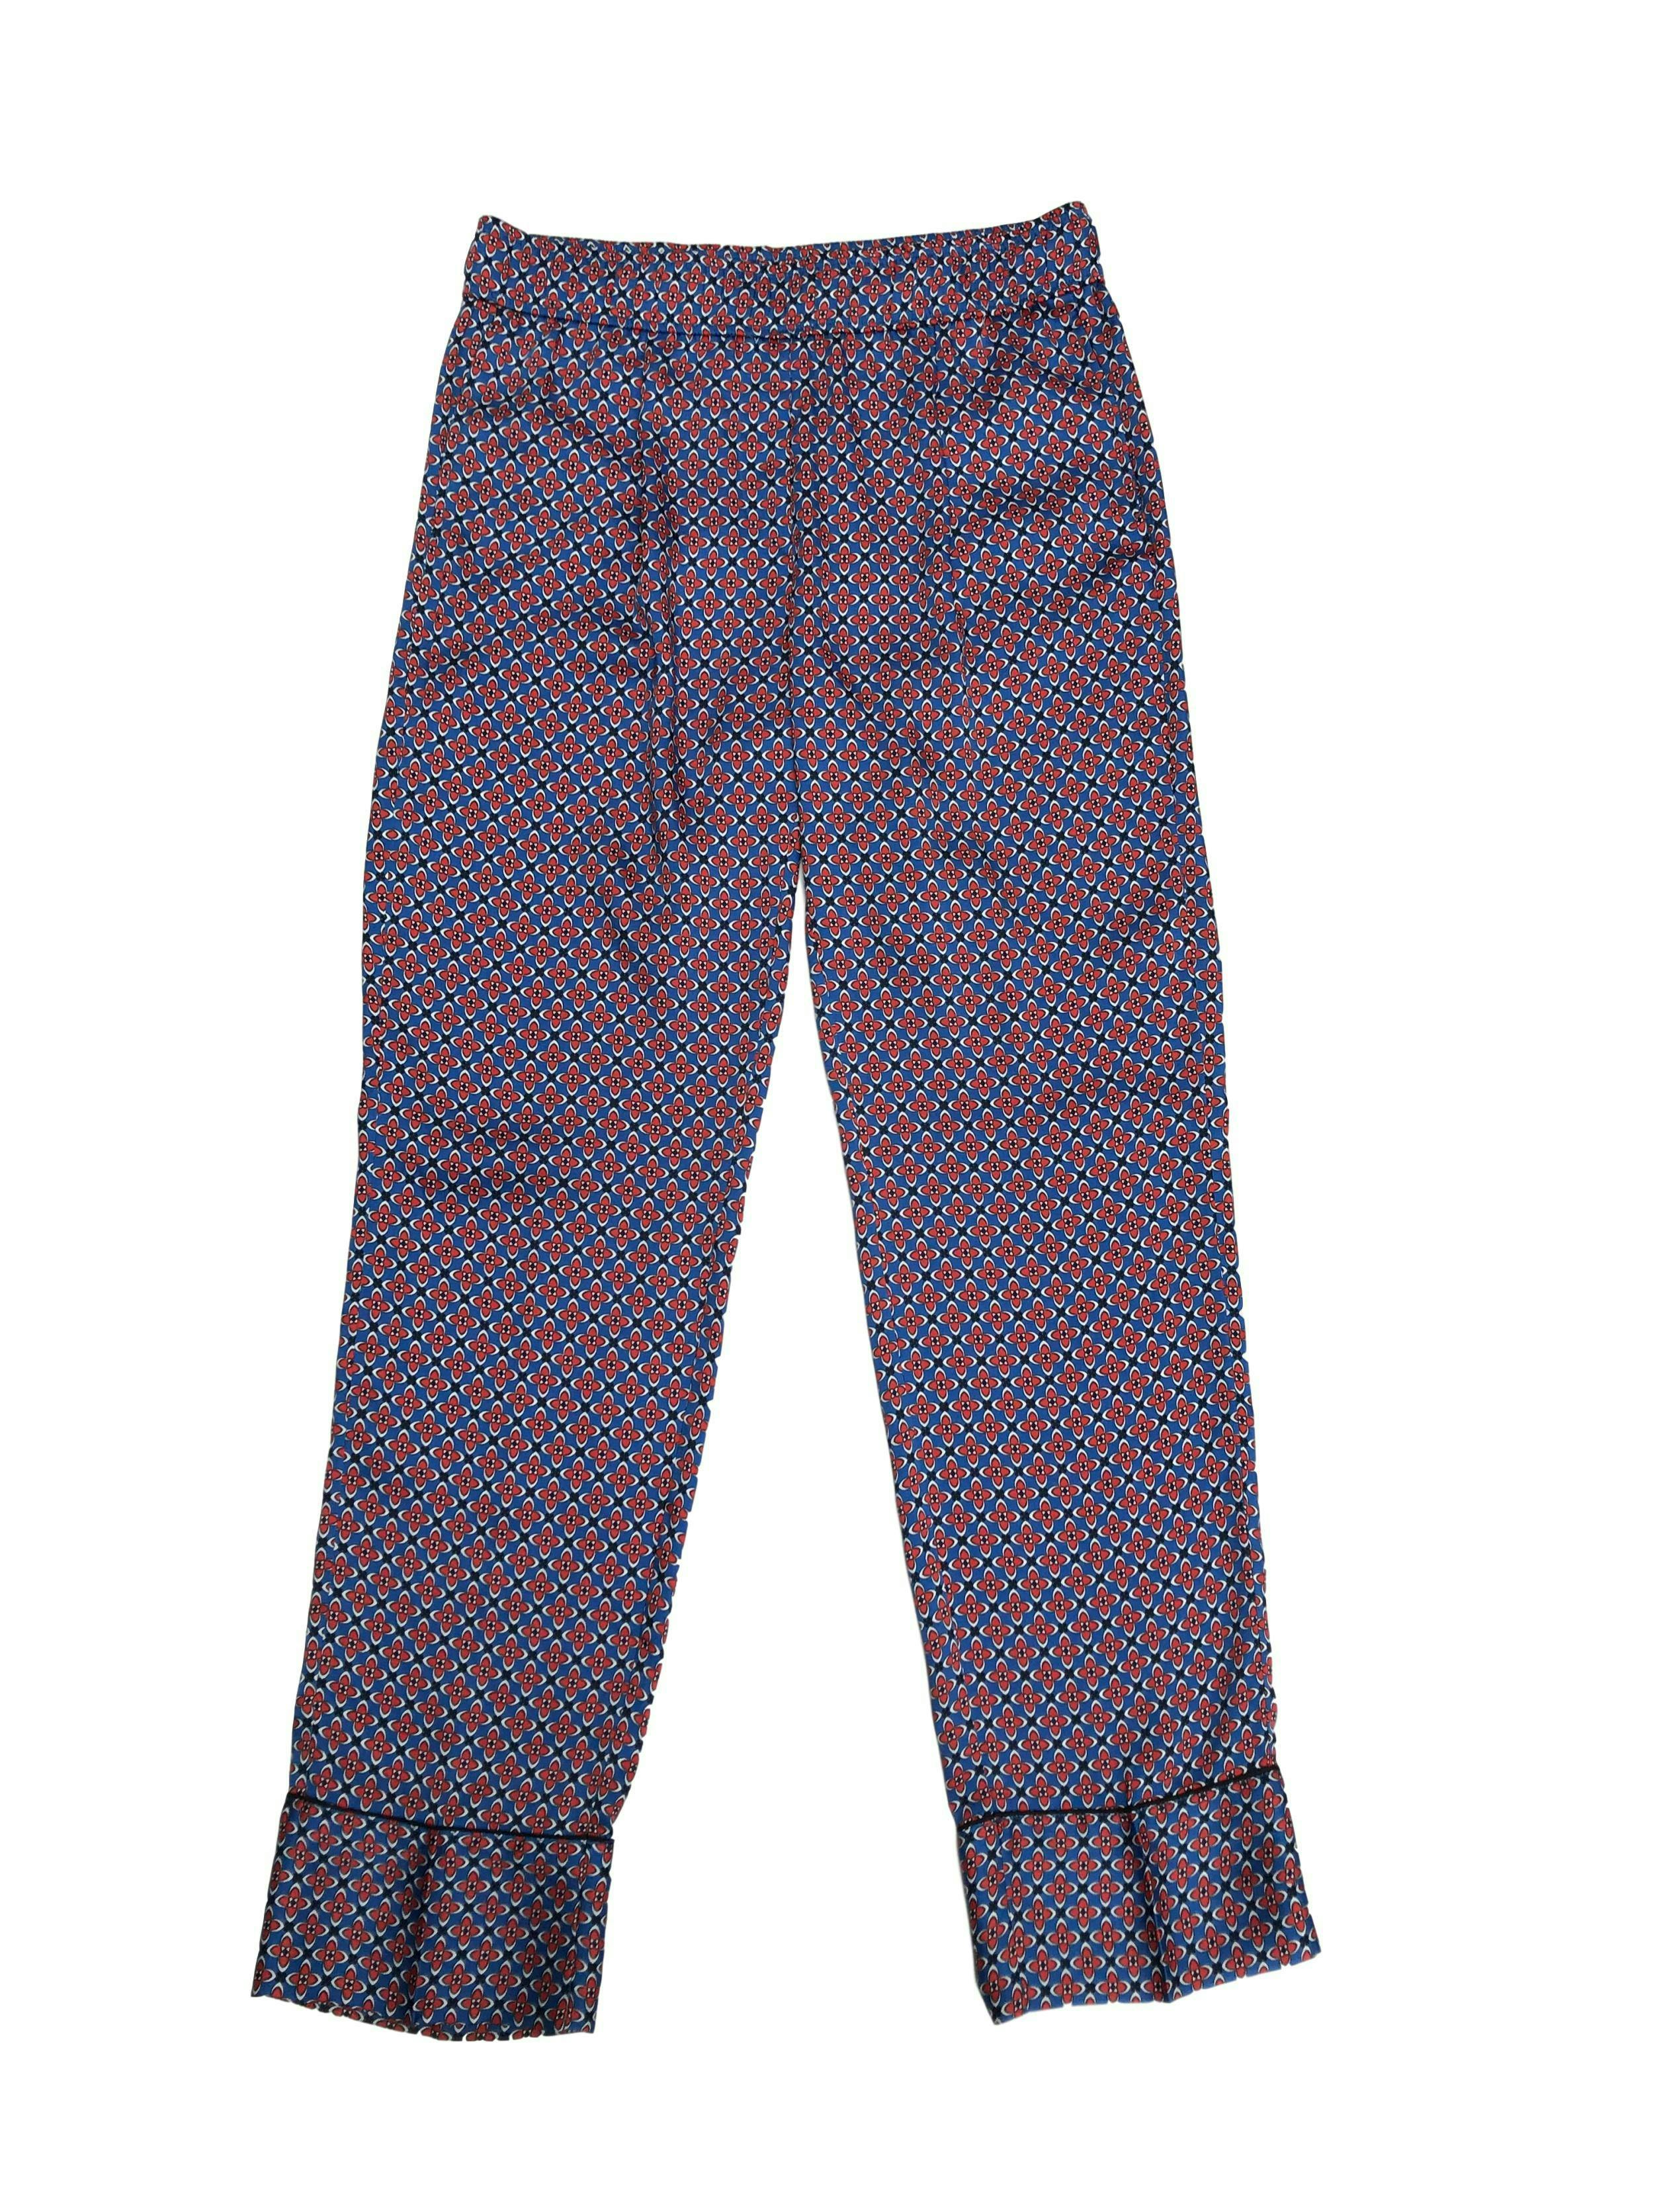 Pantalón fluido Sandro Paris tipo seda con estampado barroco azul y rojo, con bolsillos laterales. Pretina 76cm. Trendy. Precio original S/ 350